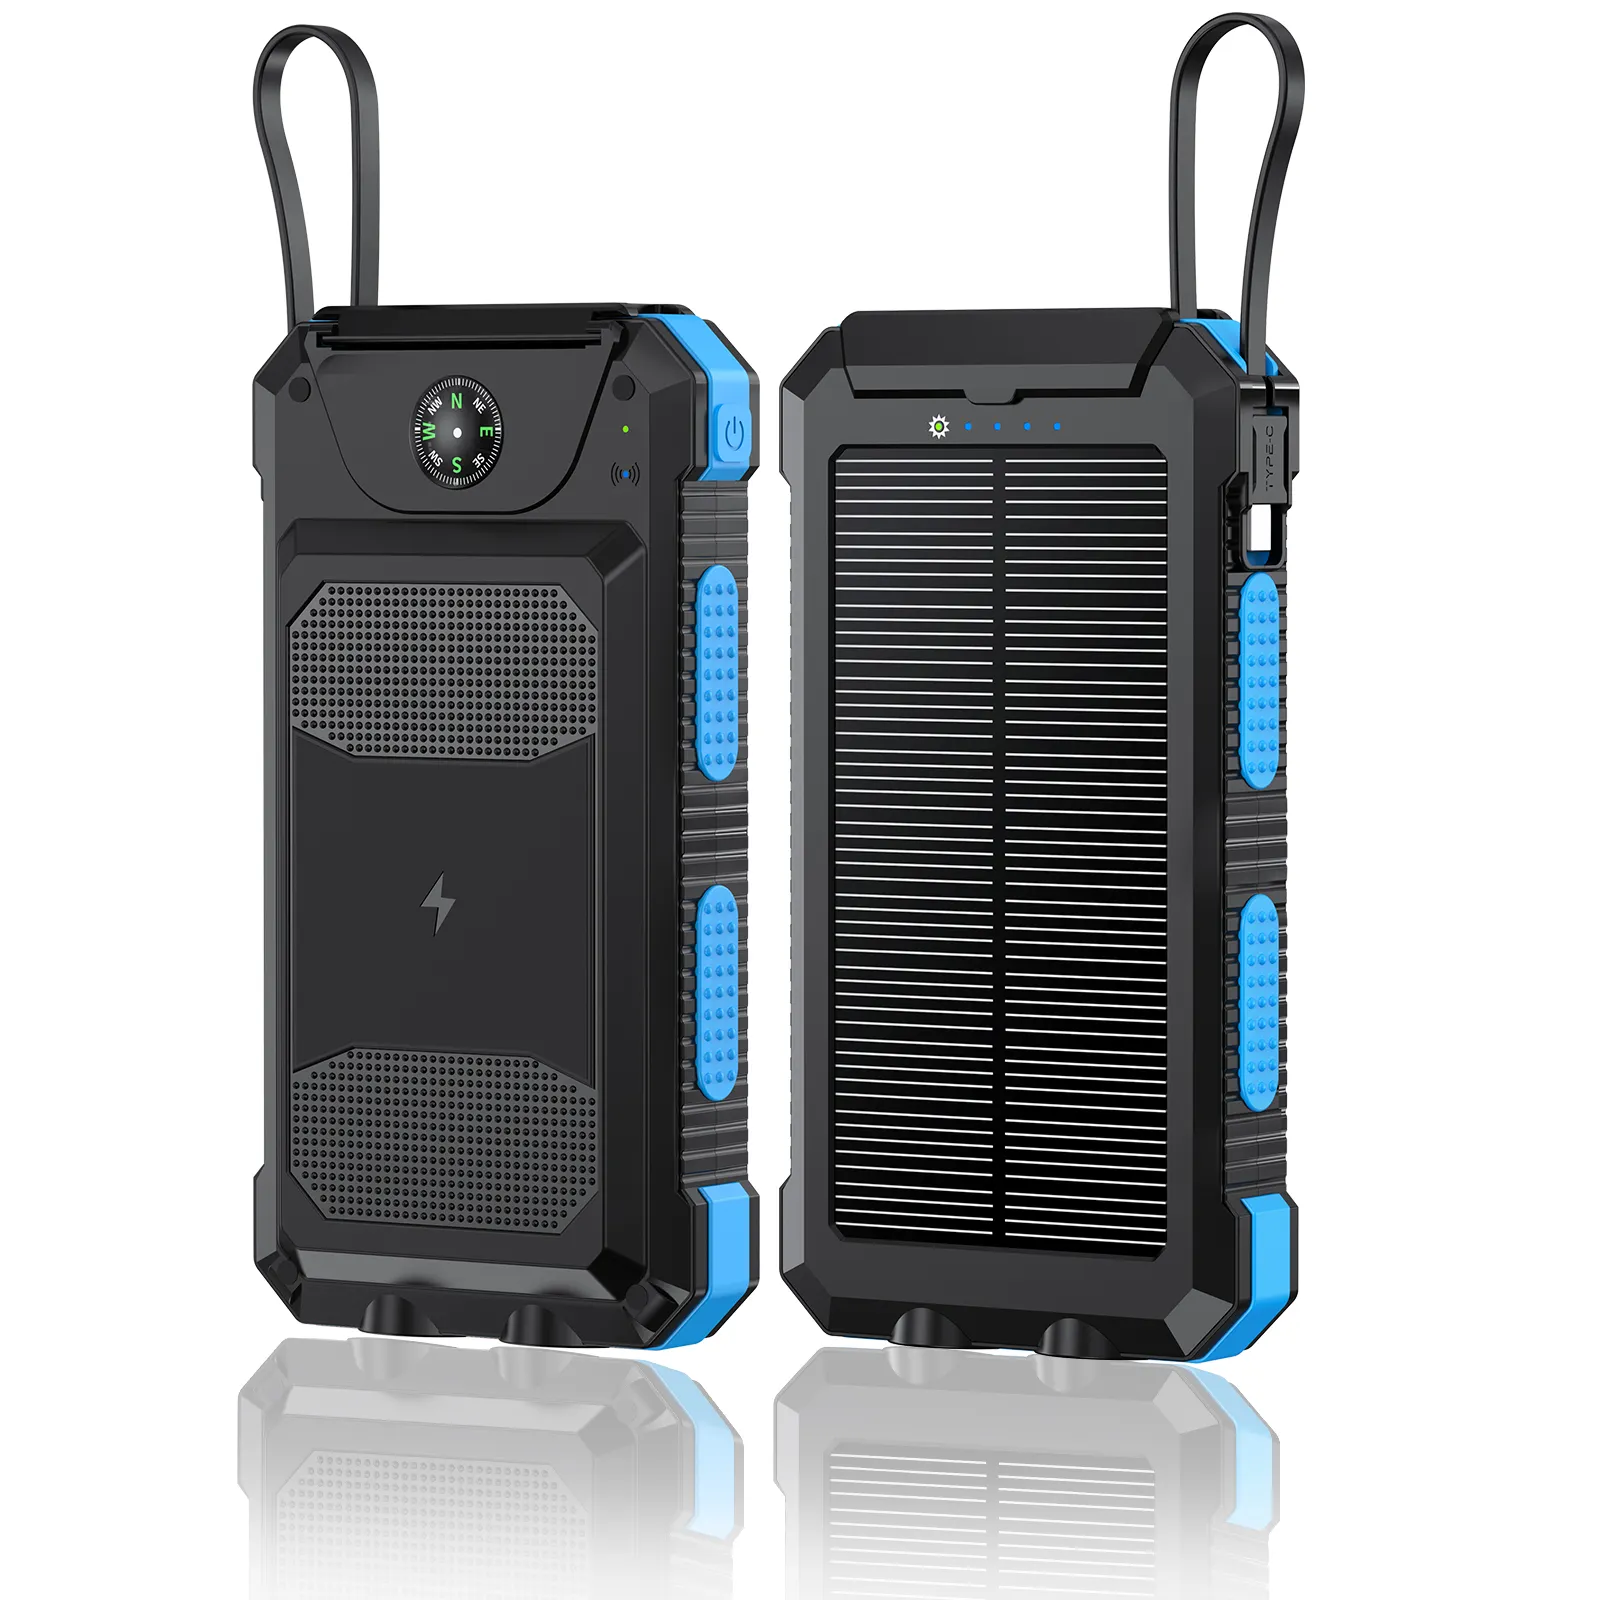 20000mAh Cargador Solar banco de suministro de energía sensor rápido cargador móvil solar para teléfono celular